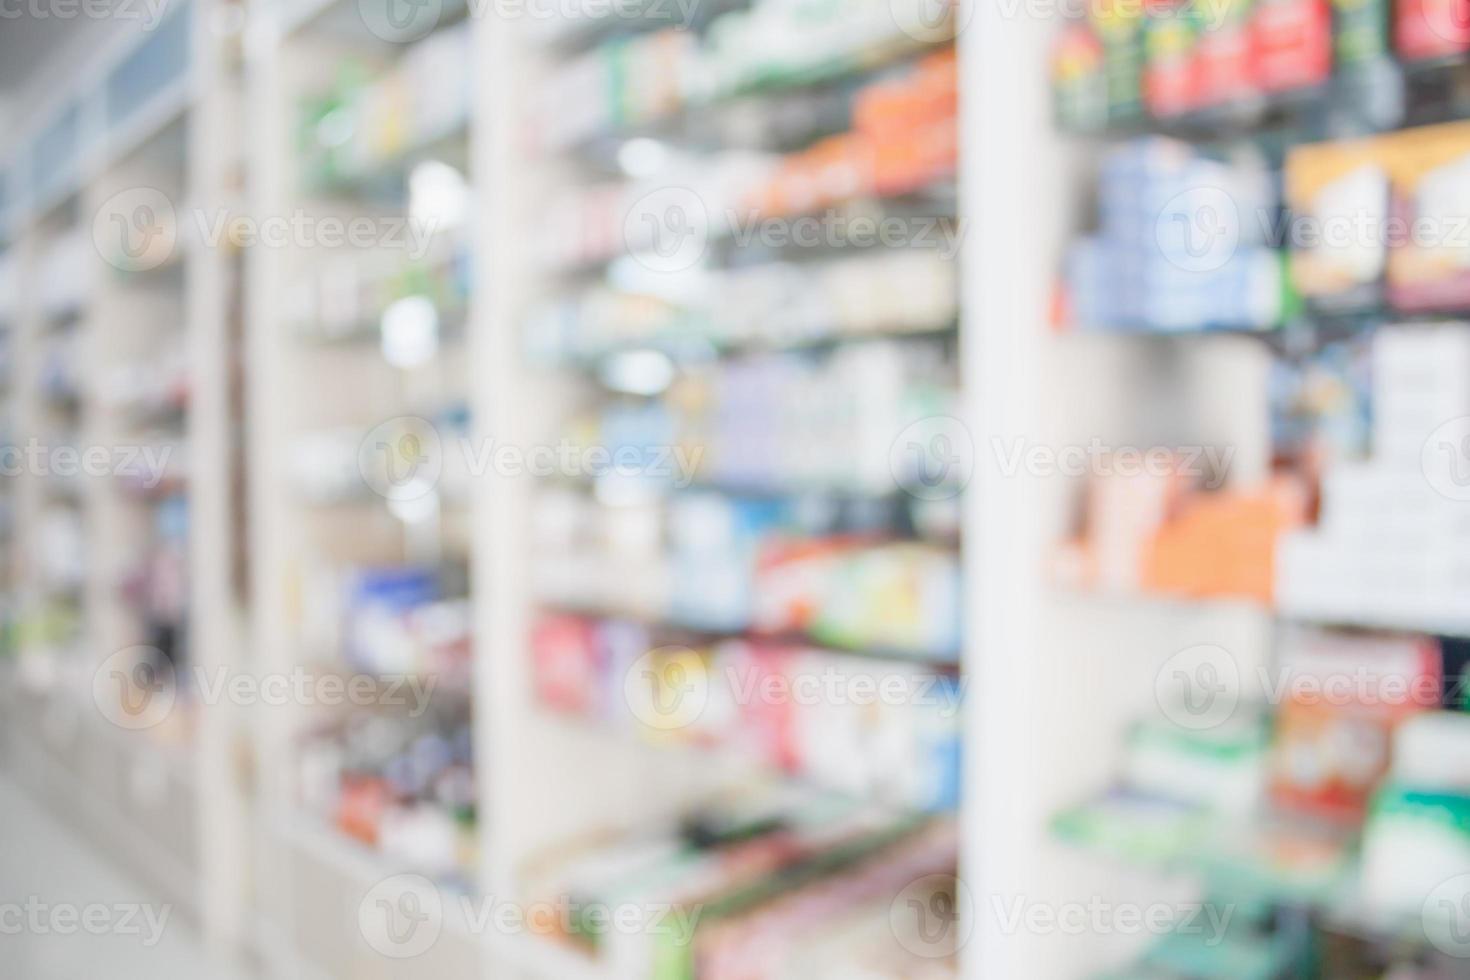 Arrière-plan flou de la pharmacie avec des médicaments sur les étagères photo